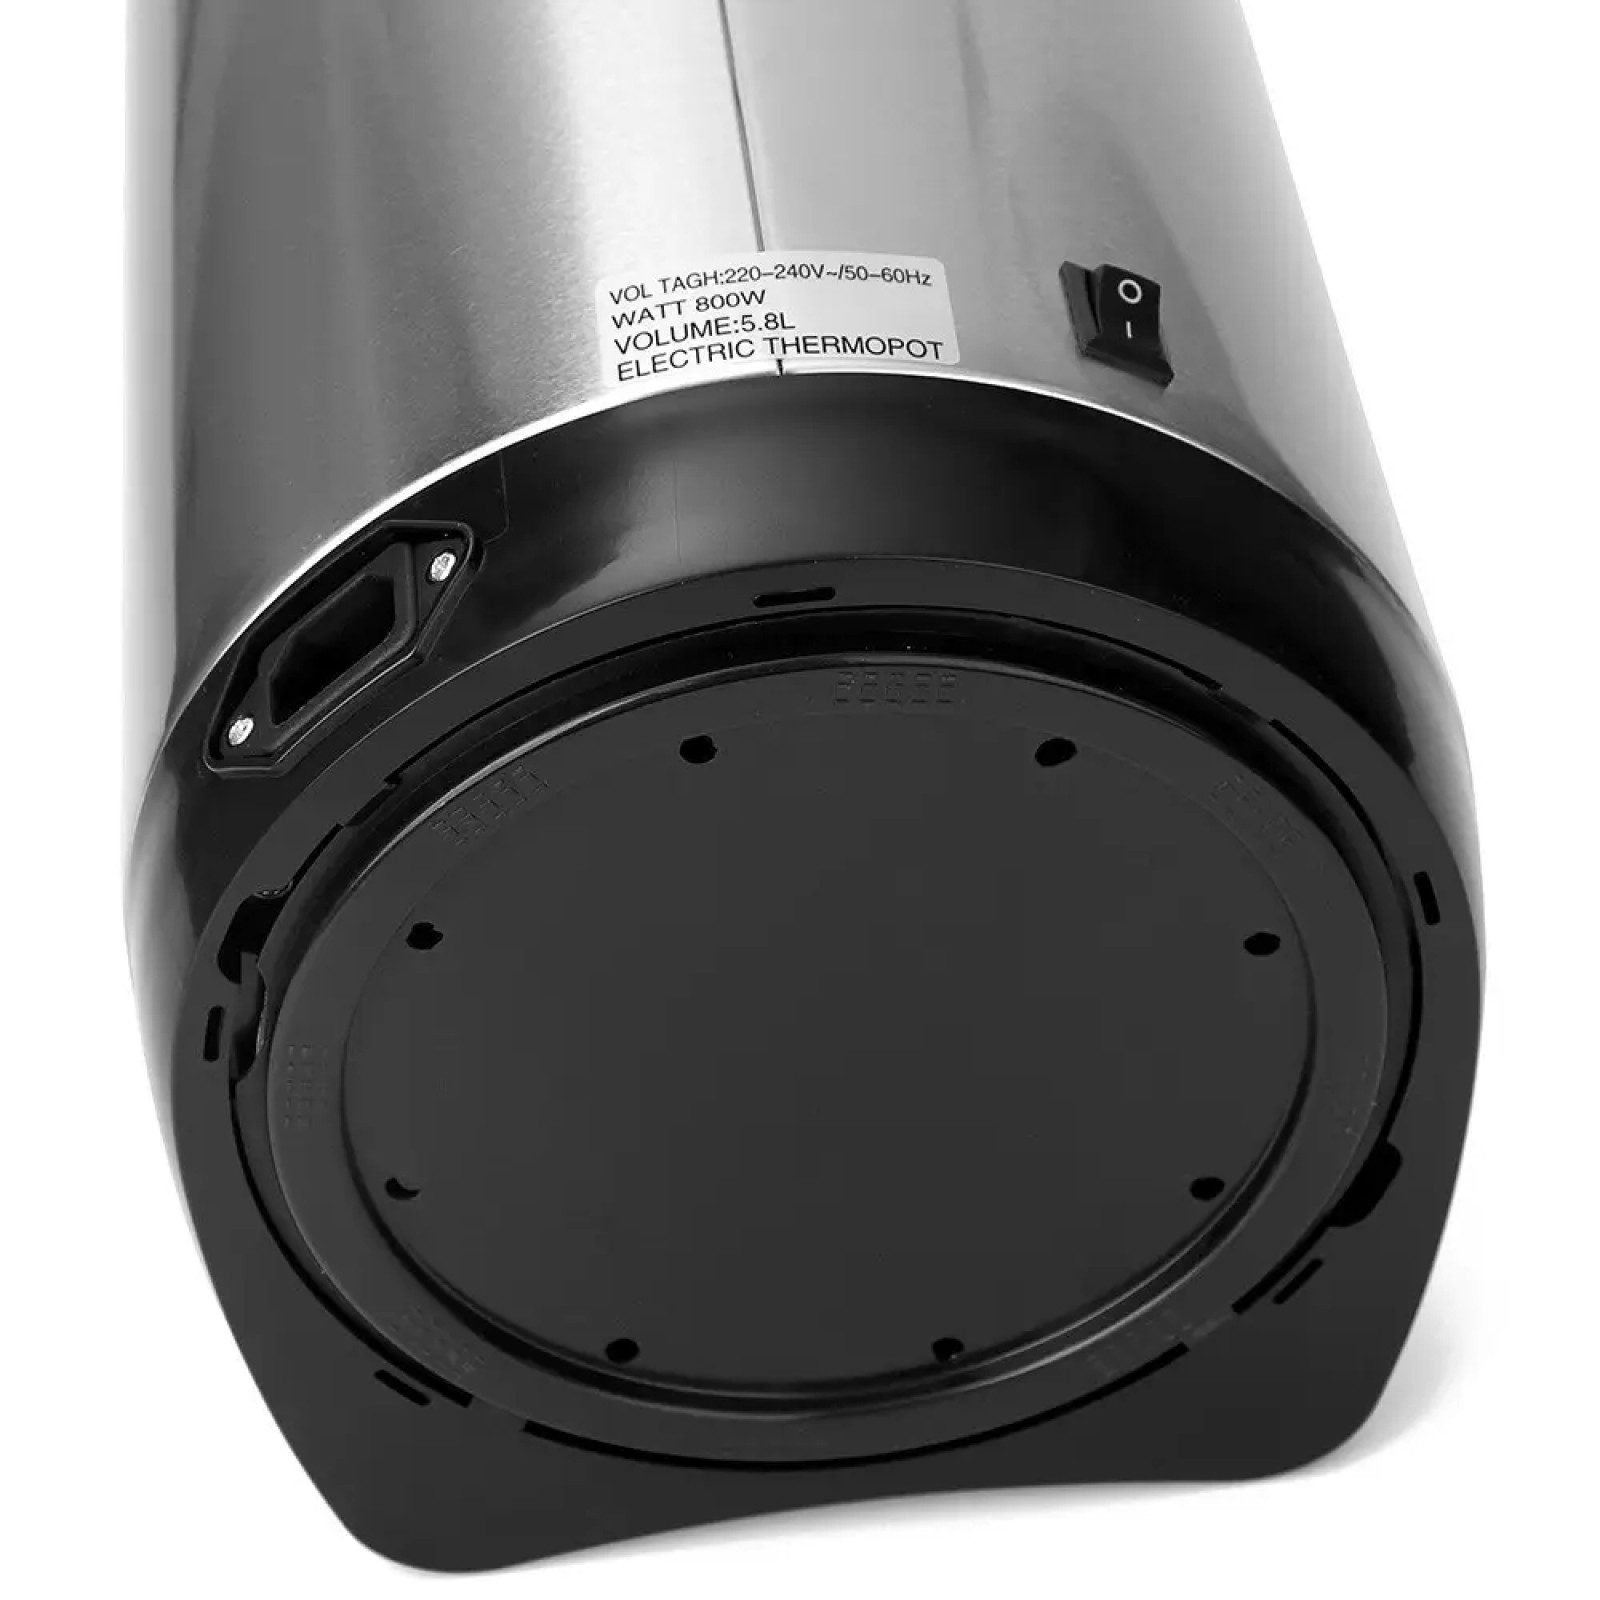 Електричний термопот побутовий 5.8 літра EMERALD Thermo Pot Duet 858-900W Термос-чайник   207213